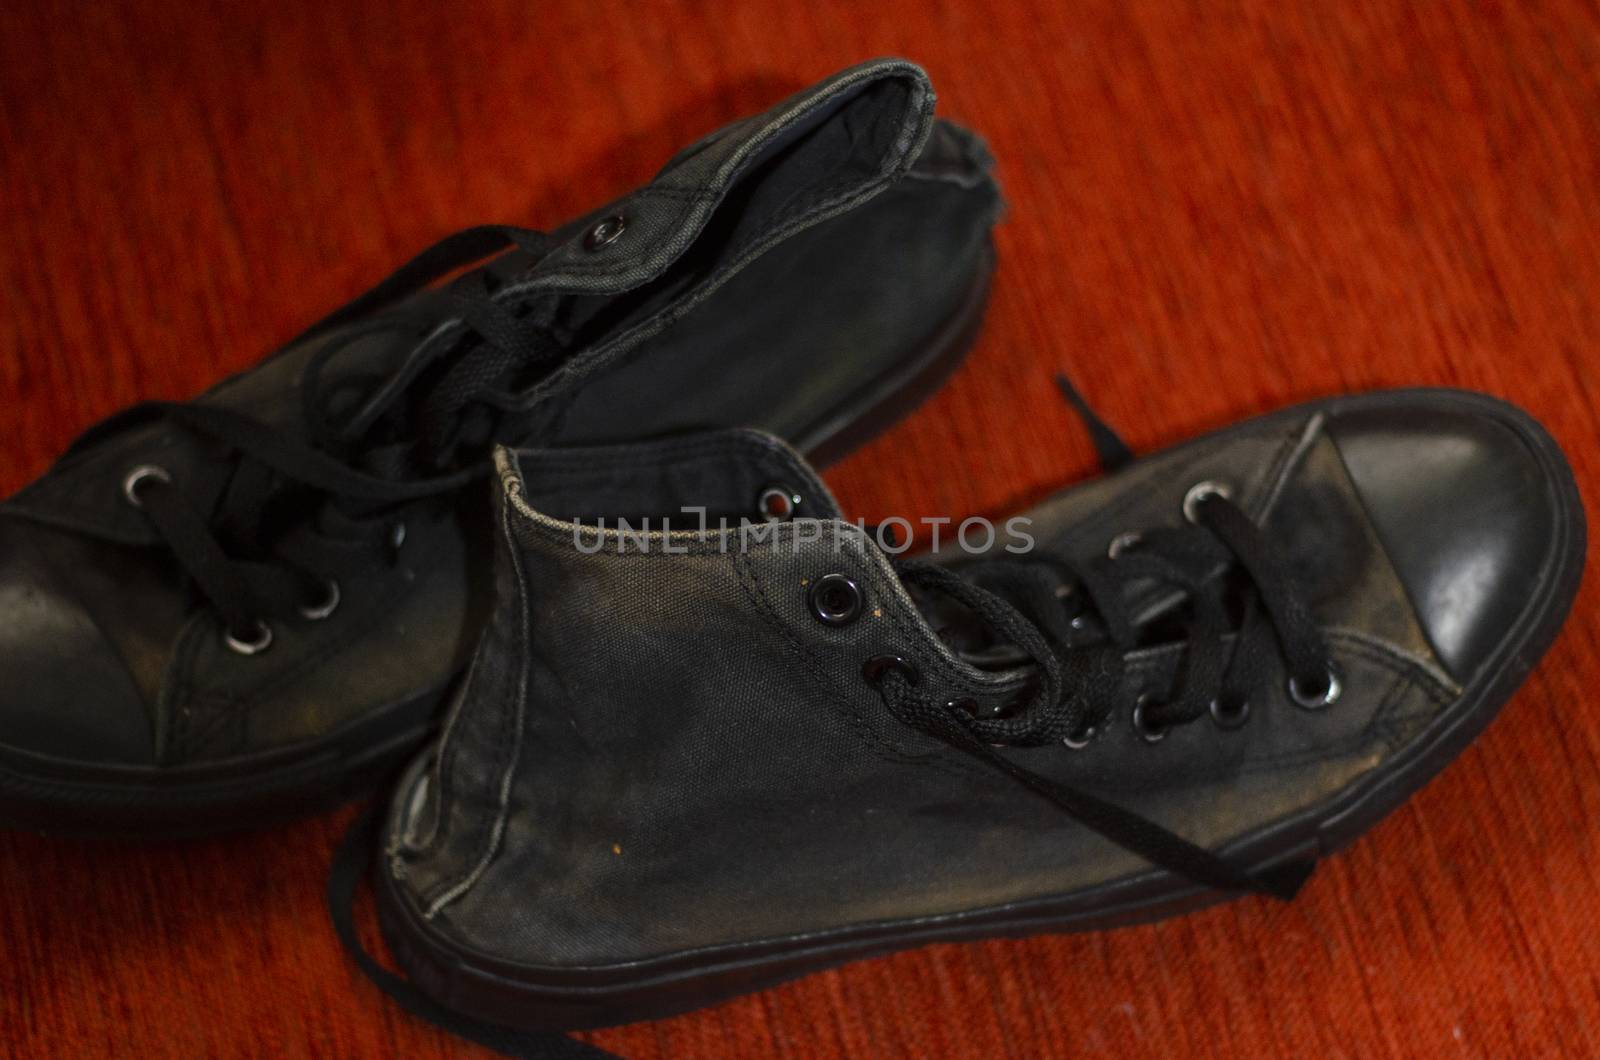 Ragged Black Stylish Shoes, Vintage Black Stylish Shoes by Hasilyus